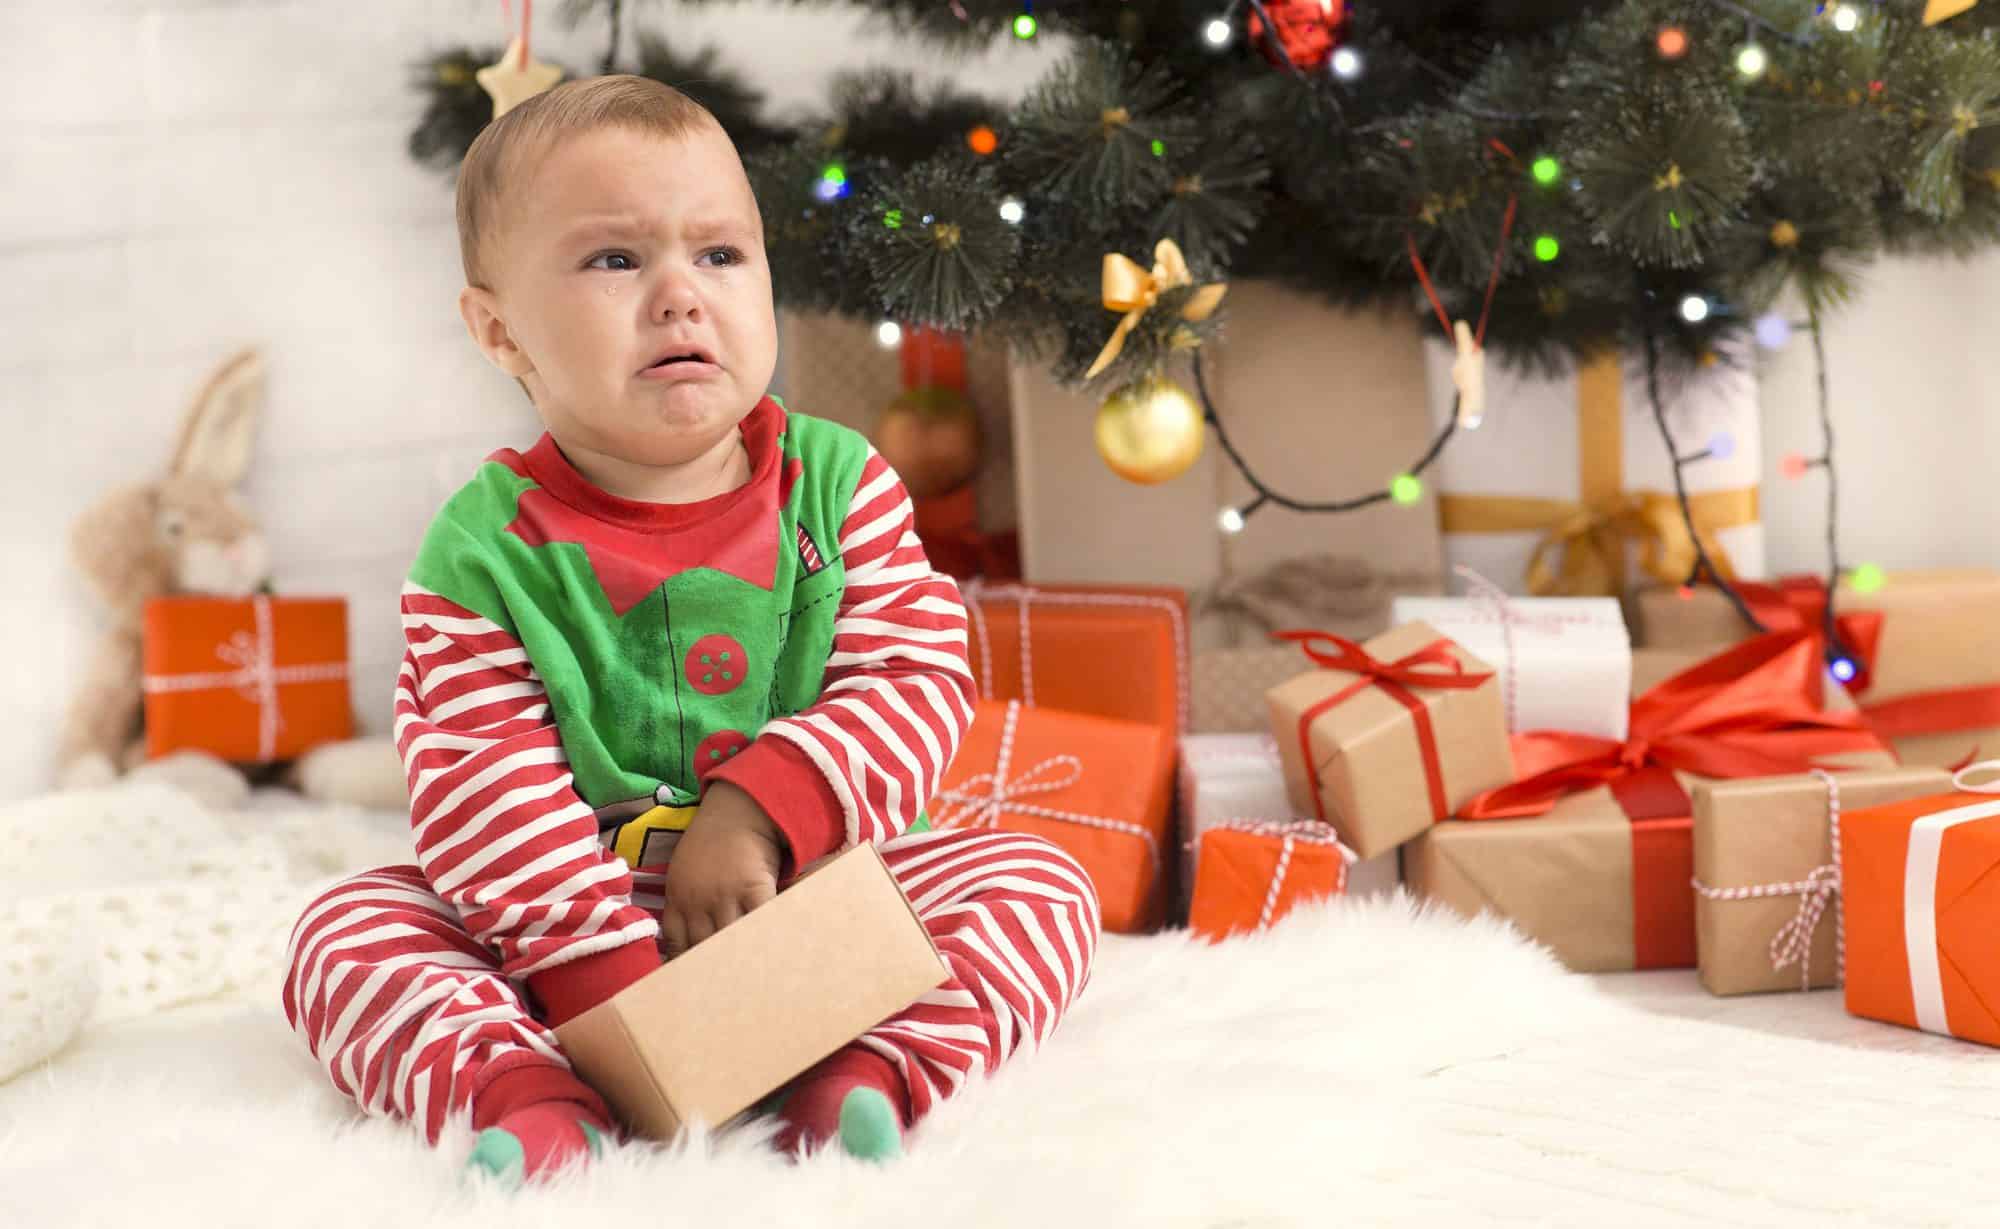 Abrir regalos puede provocar berrinches en los niños - CSC